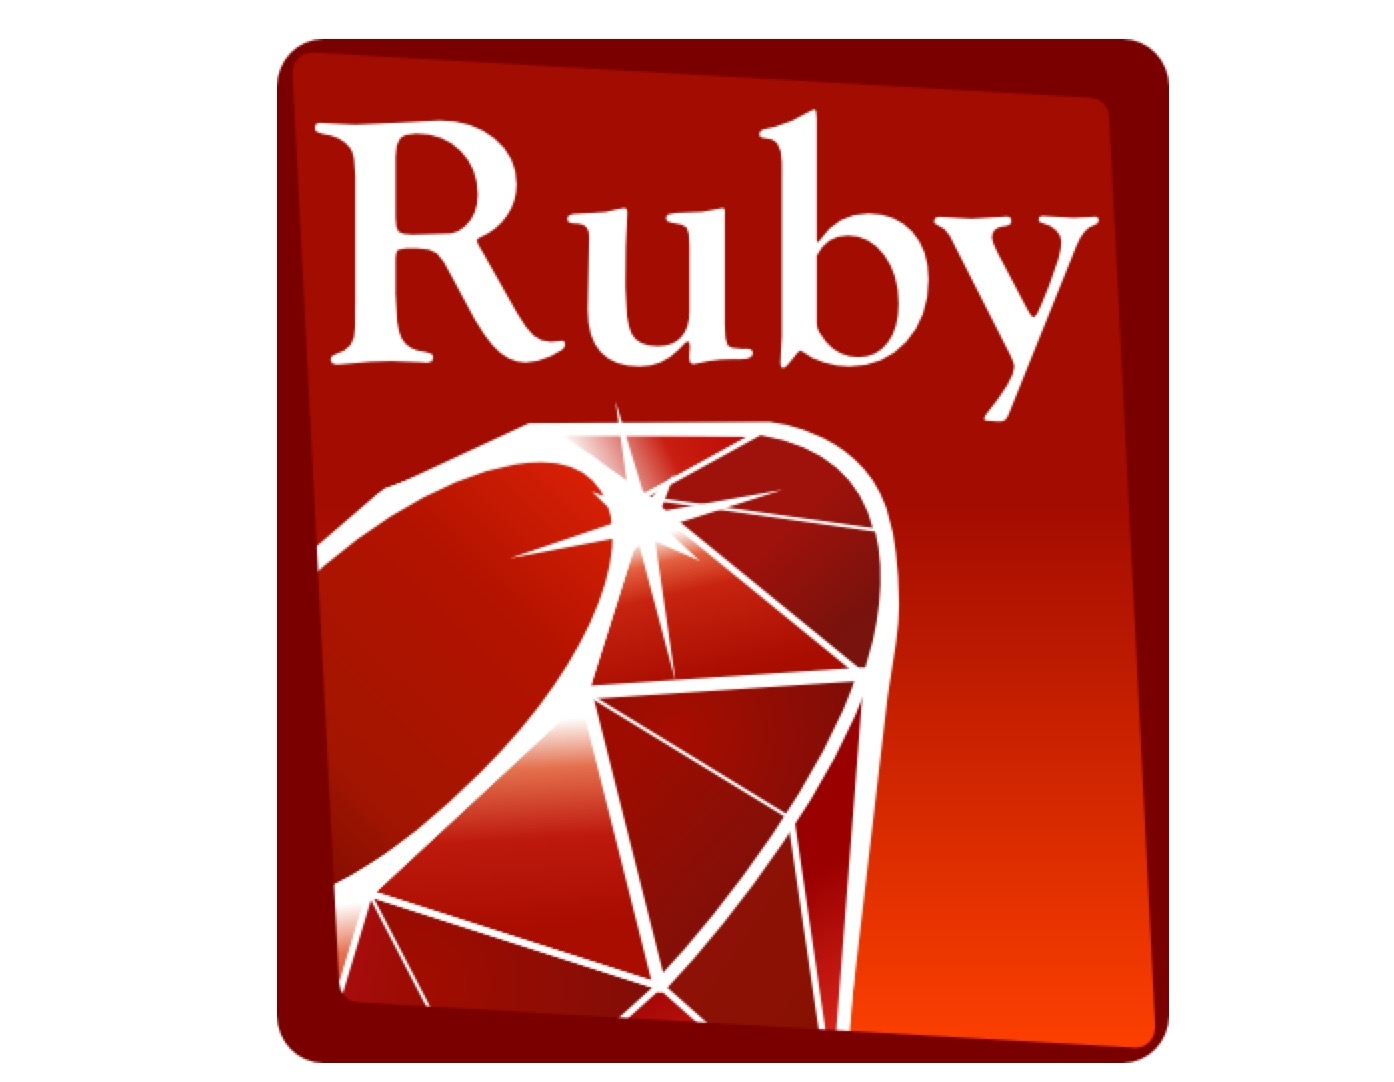 Ruby(ruby語言)